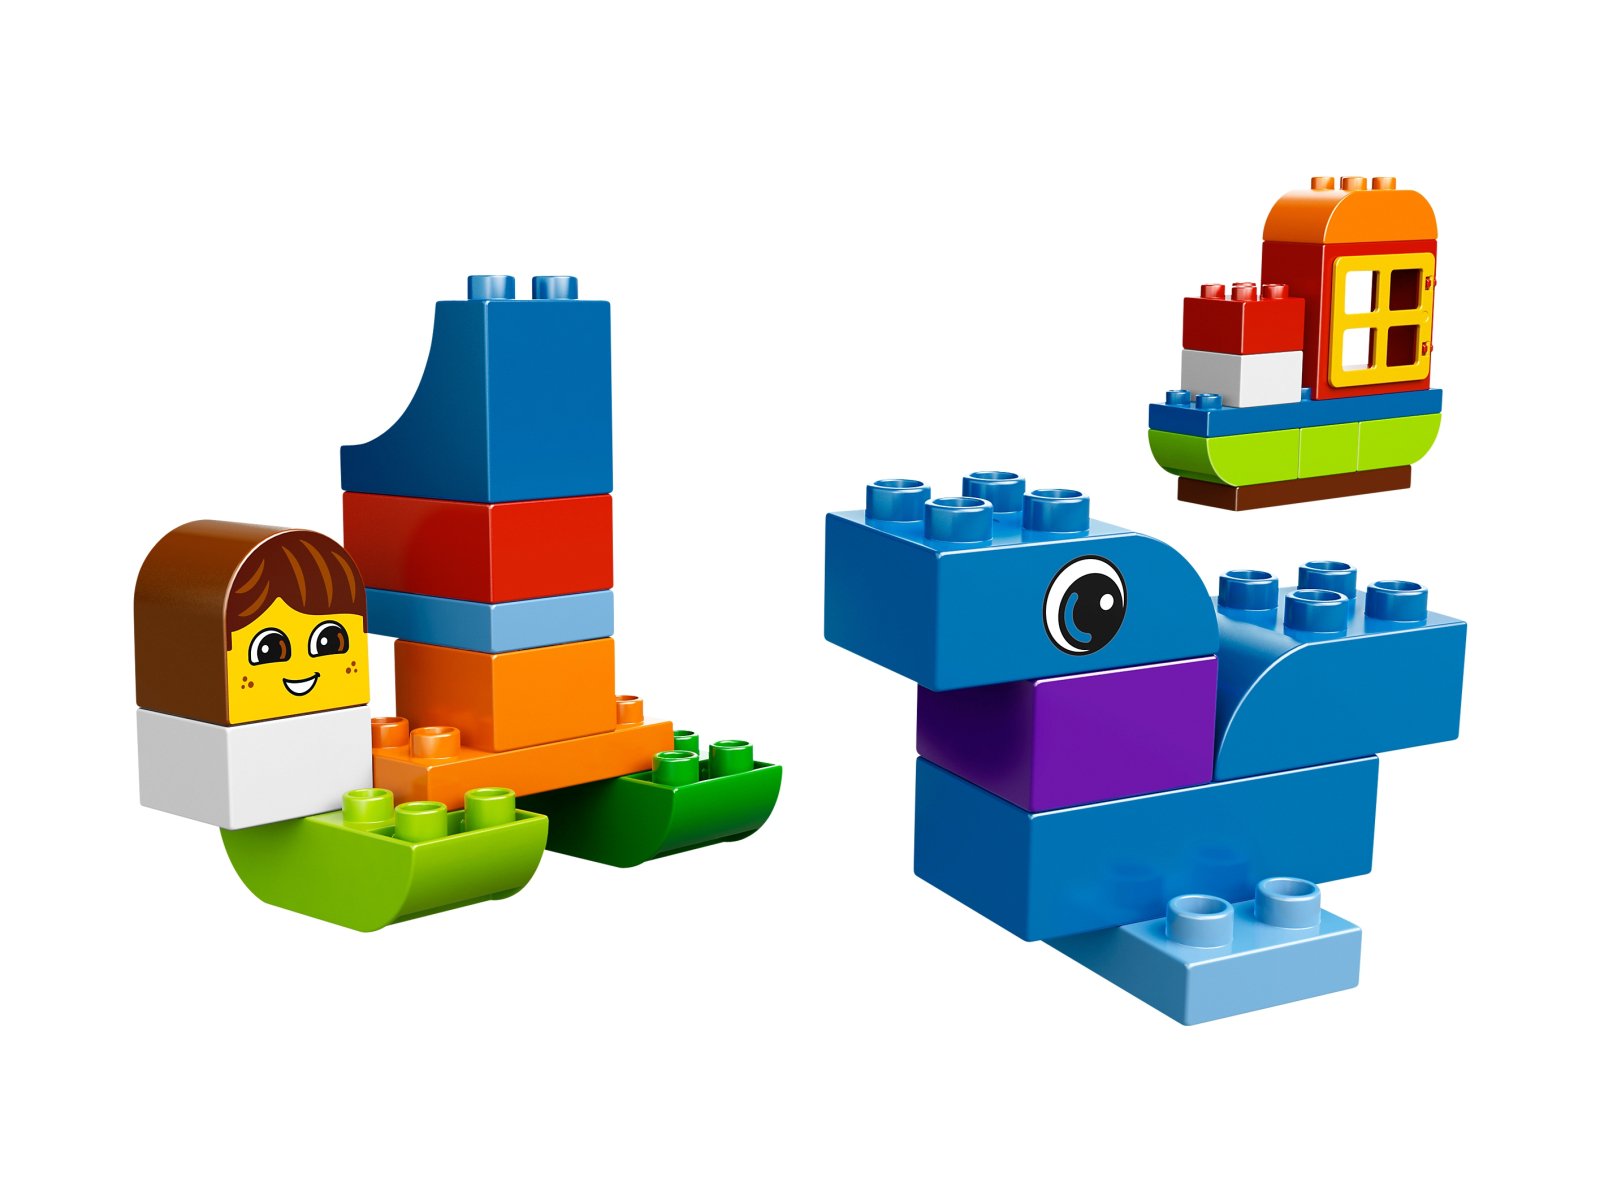 LEGO Duplo Wielka wieża LEGO® DUPLO® 10557